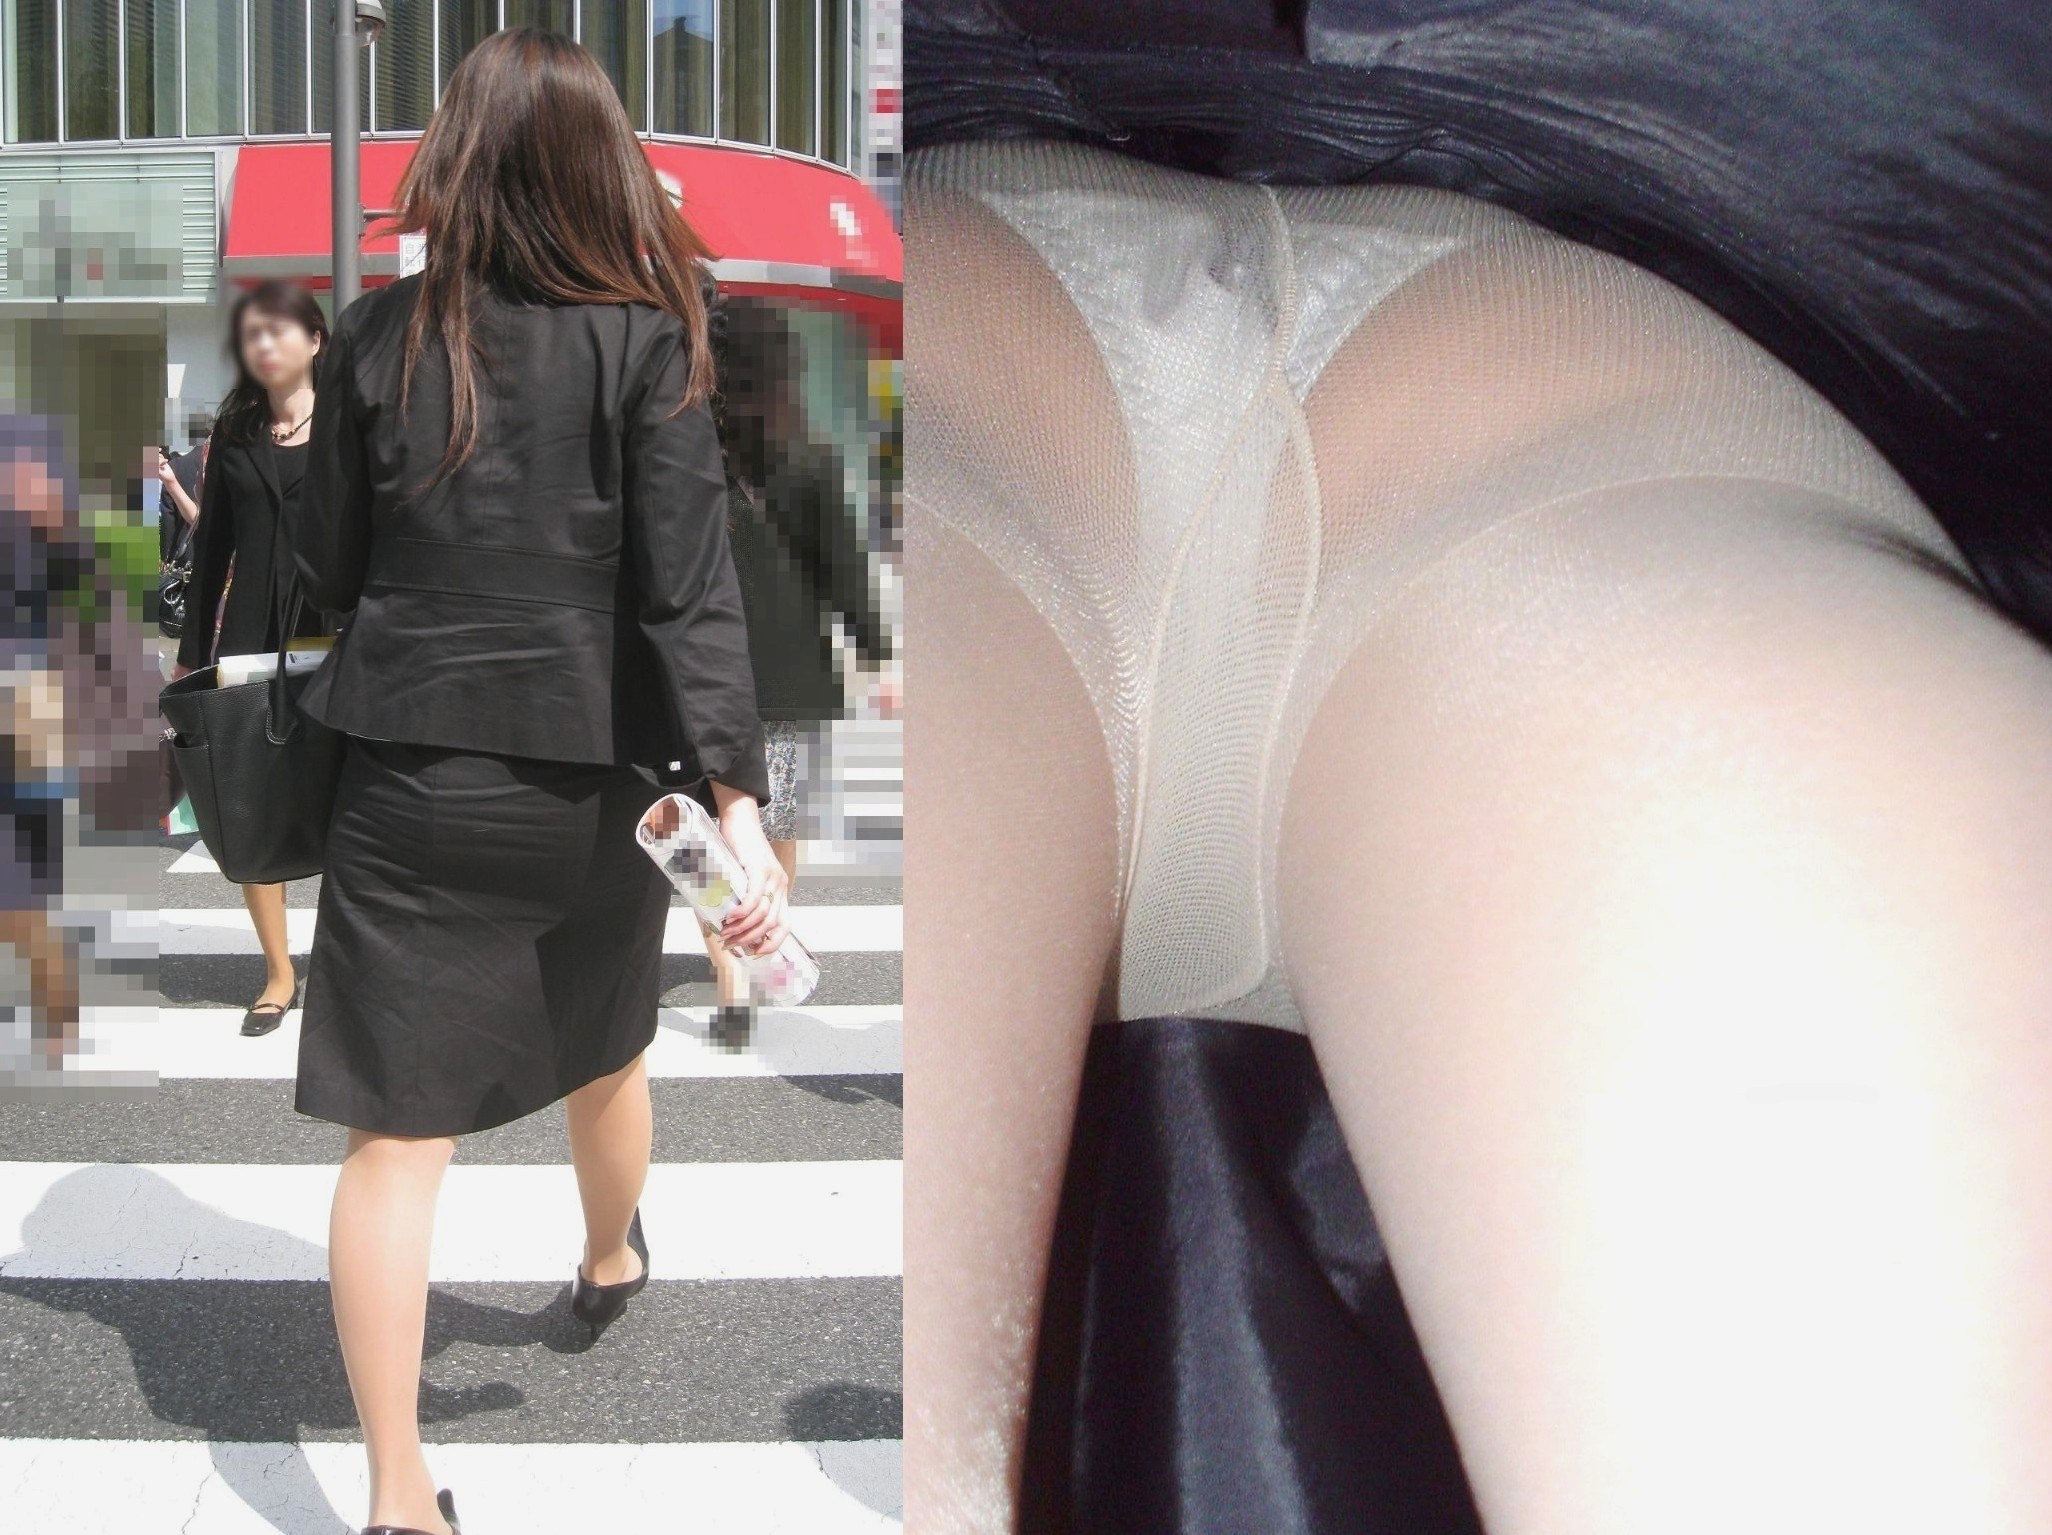 【逆さ撮り】働く素人OLのタイトスカート内を接写撮りwの画像17枚目